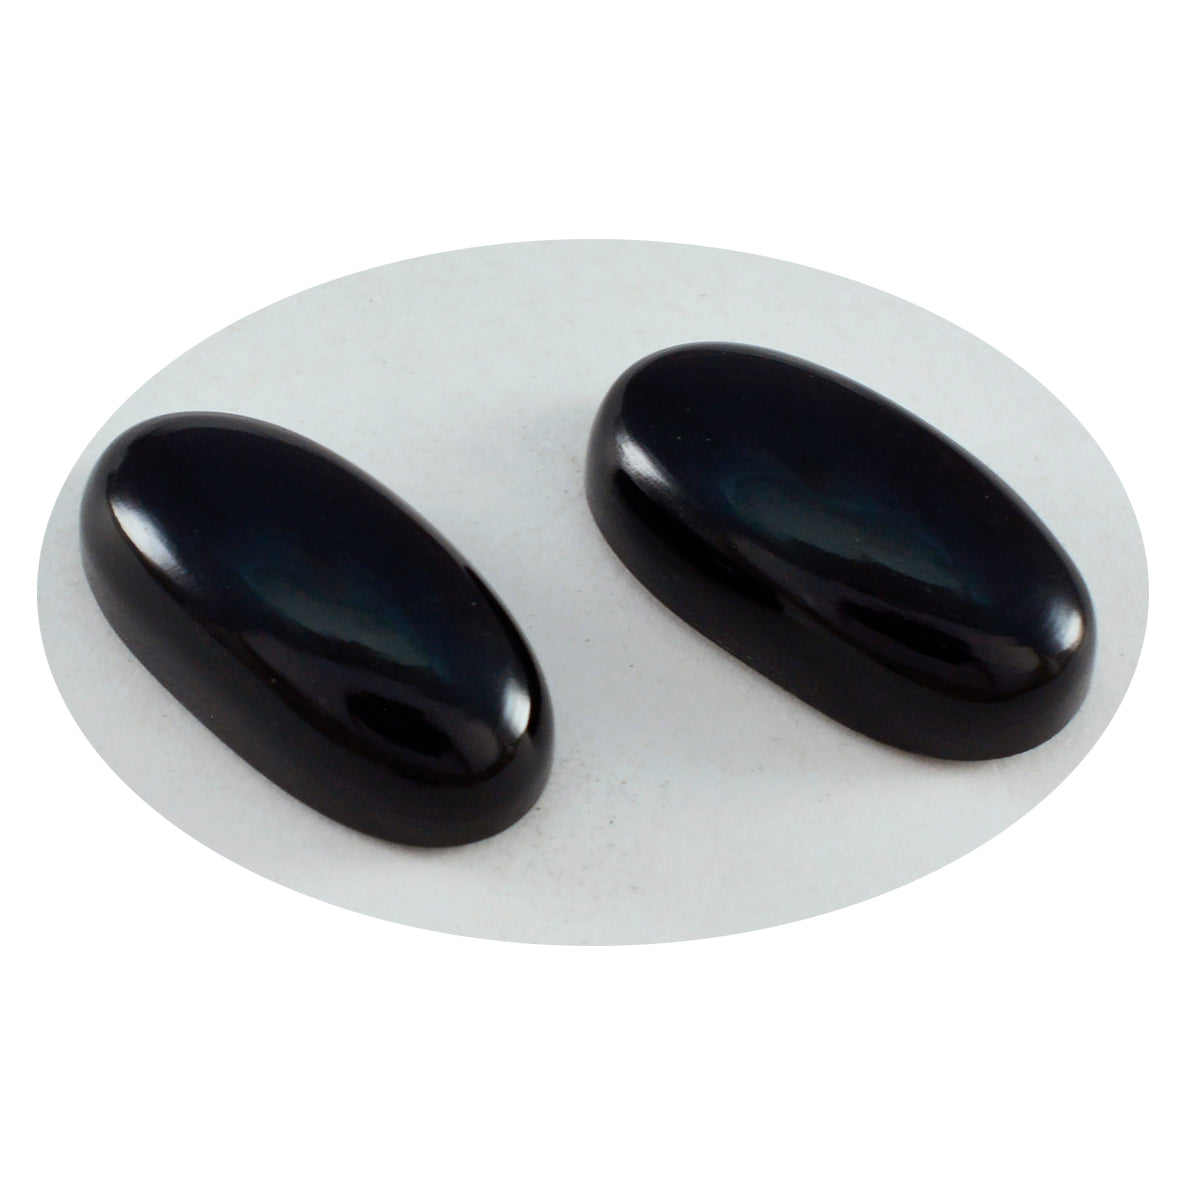 Riyogems 1PC Black Onyx Cabochon 9X18 mm Oval Shape great Quality Gem